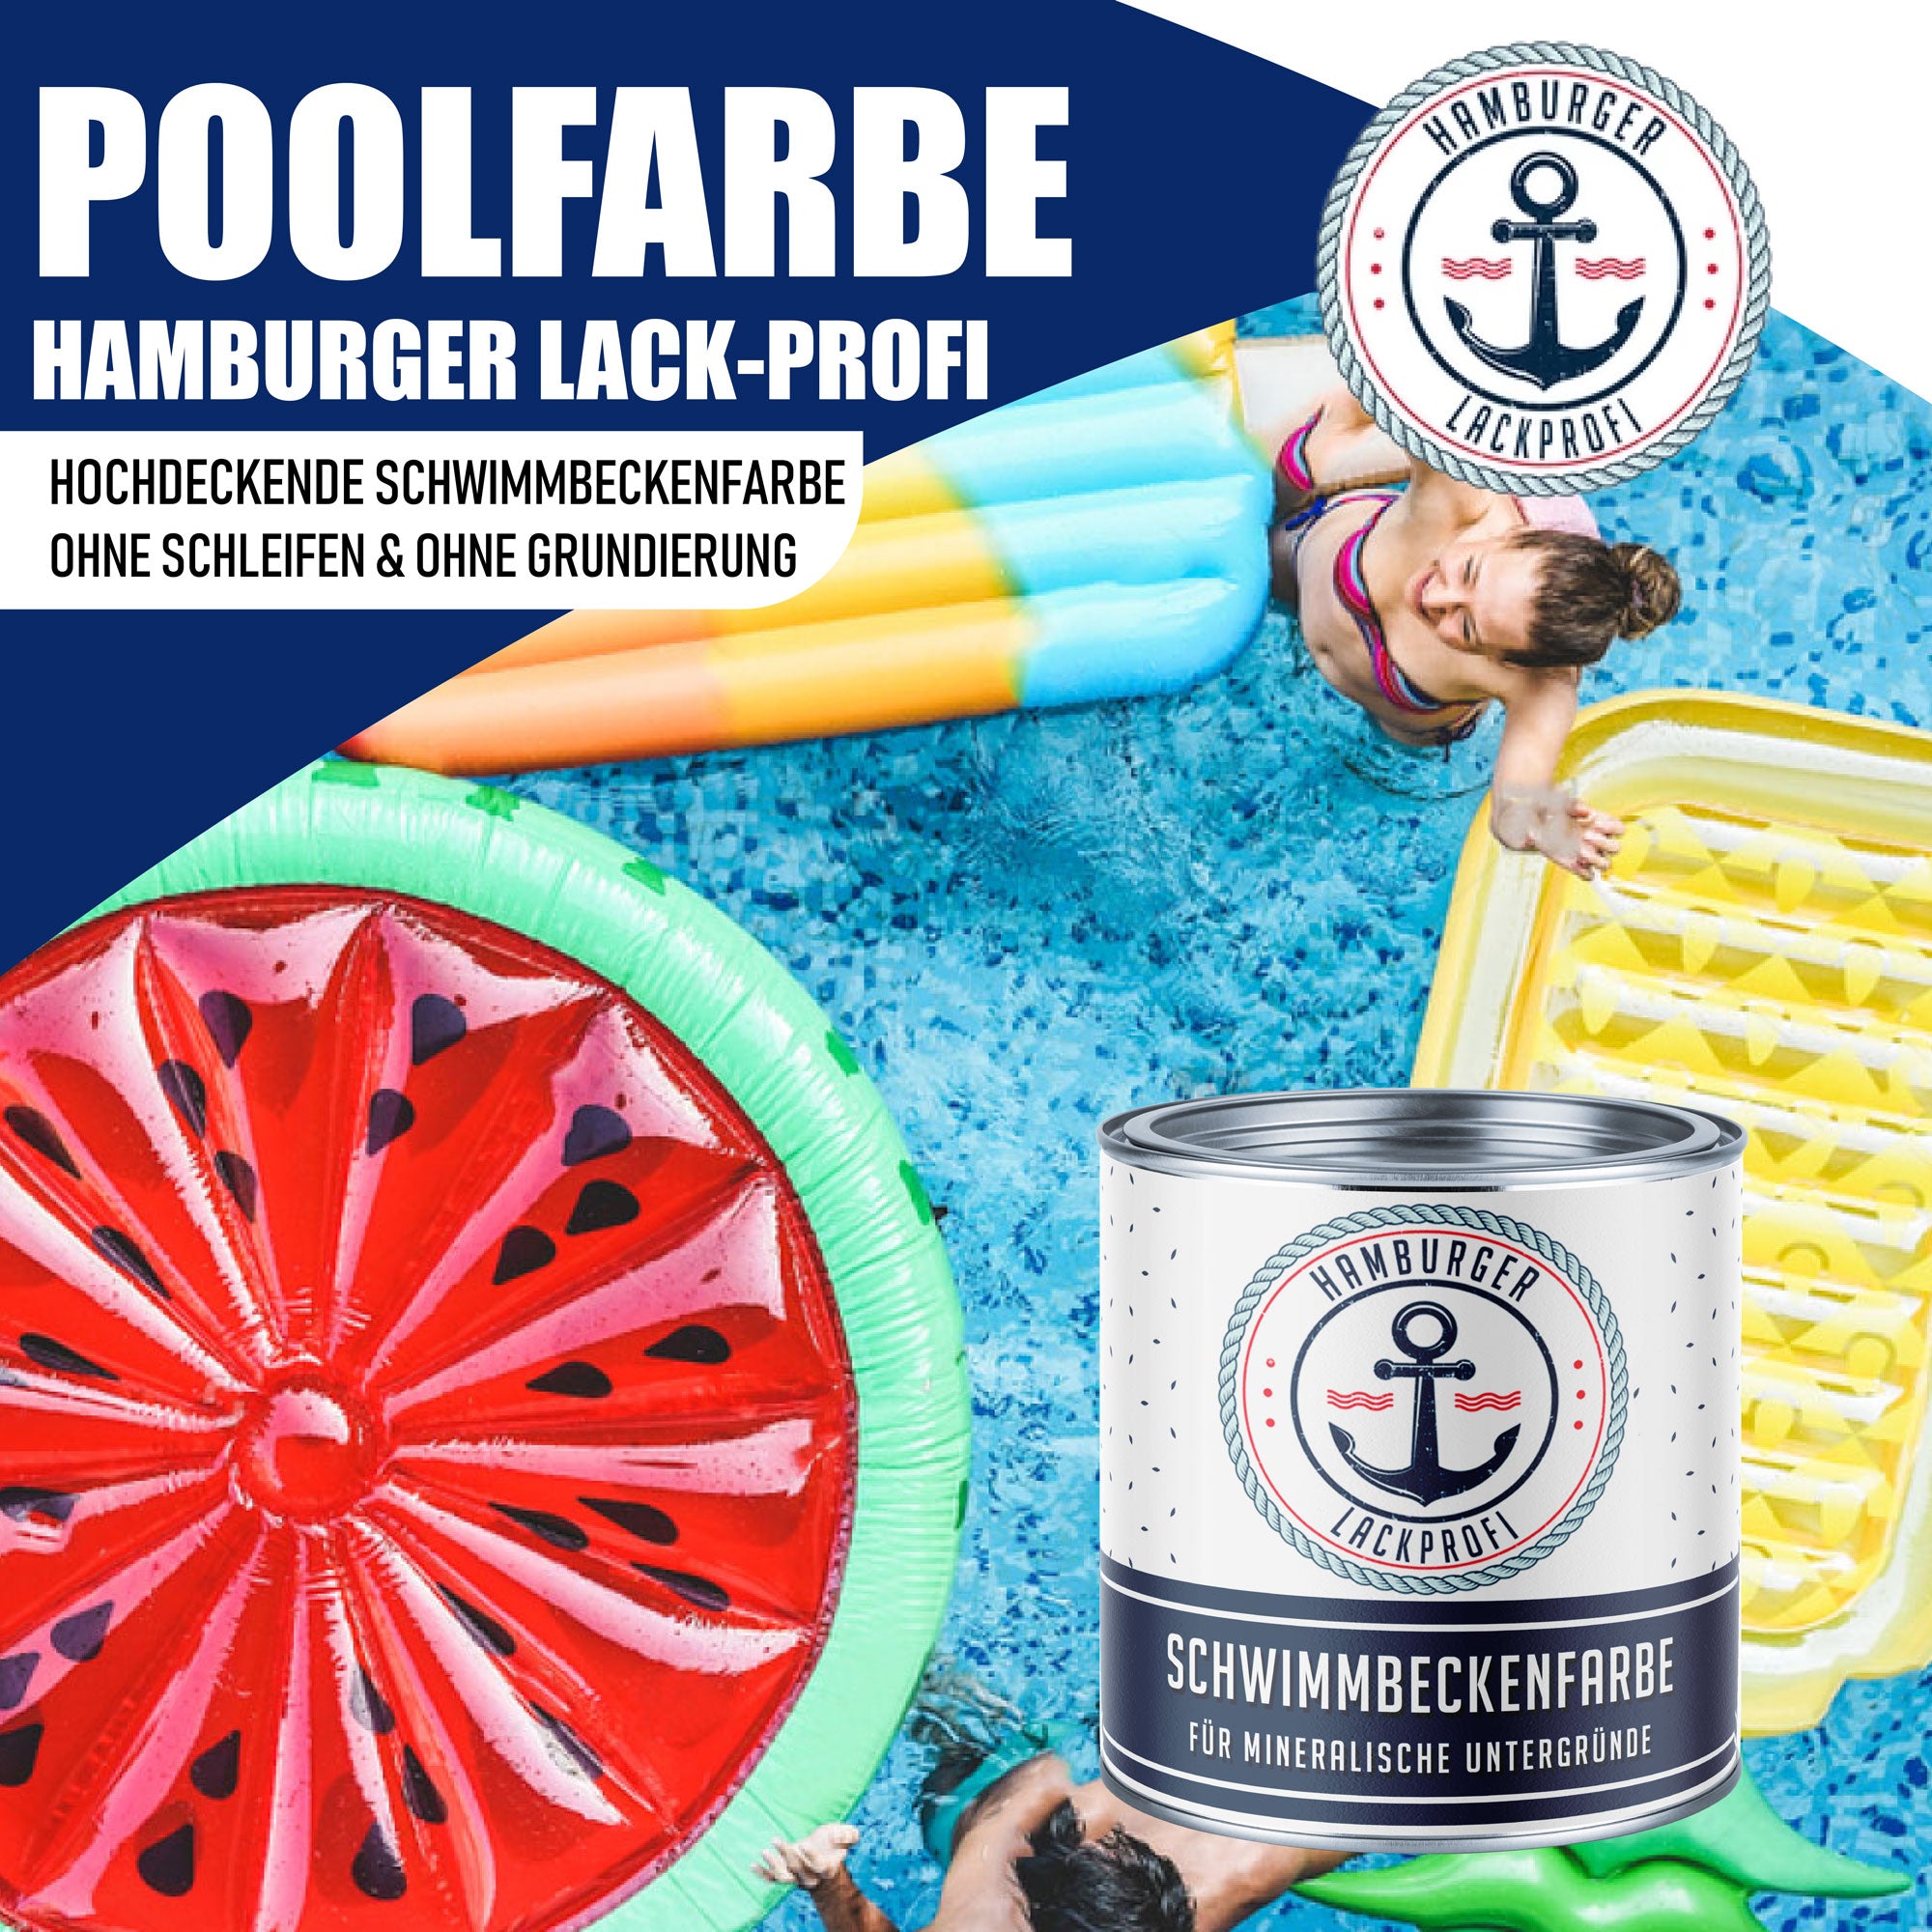 Hamburger Lack-Profi Schwimmbeckenfarbe Lichtblau RAL 5012 - hochdeckende Poolfarbe